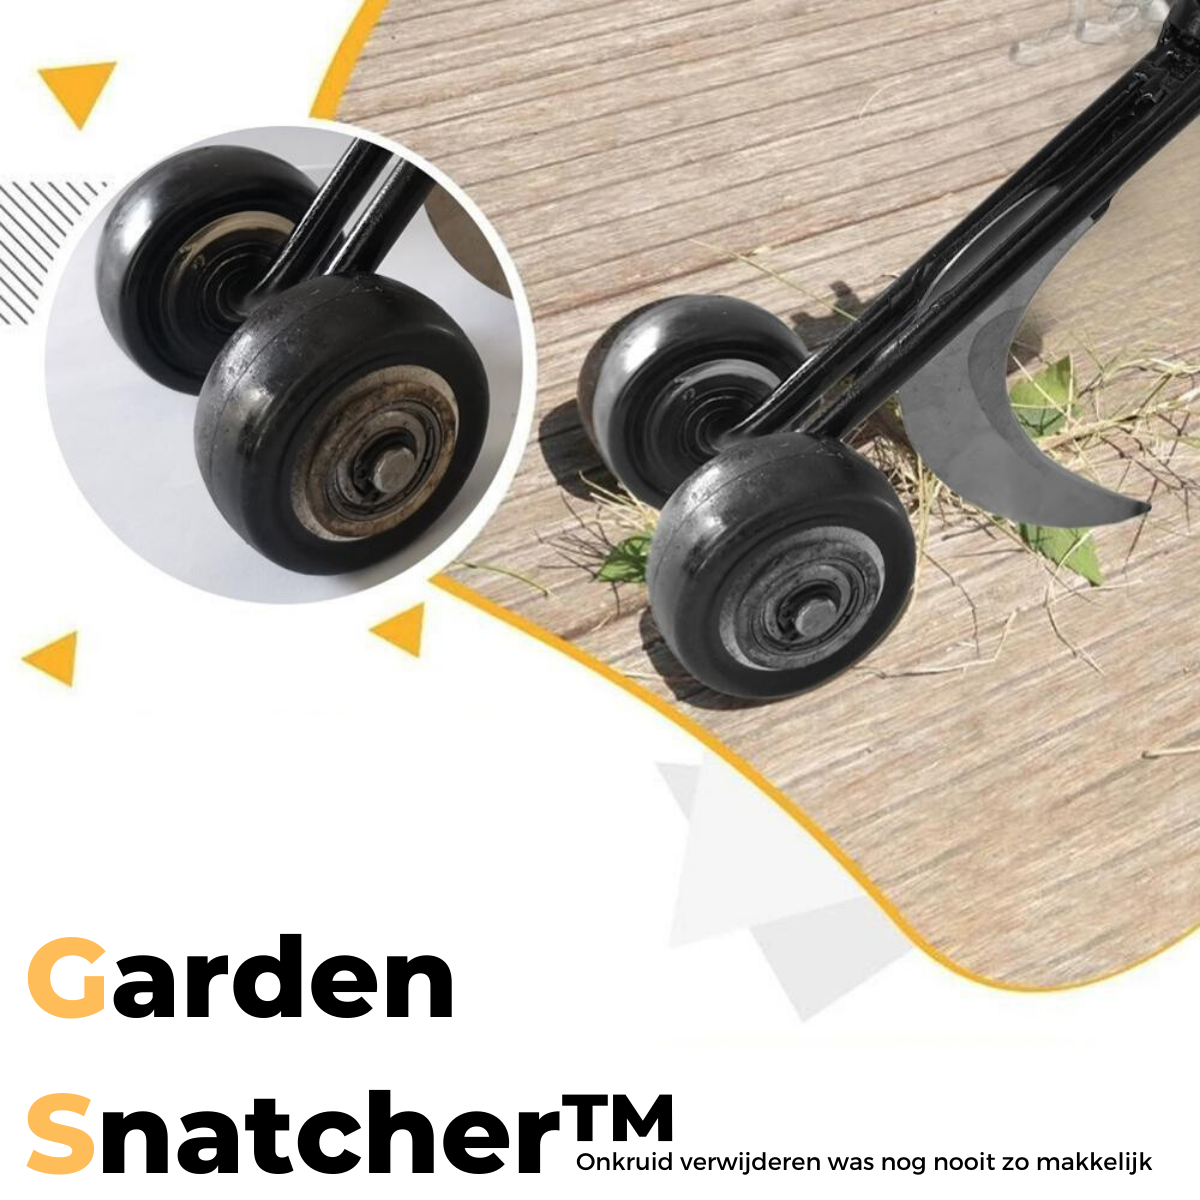 Garden Snatcher™ | Onkruid verwijderen was nog nooit zo makkelijk!